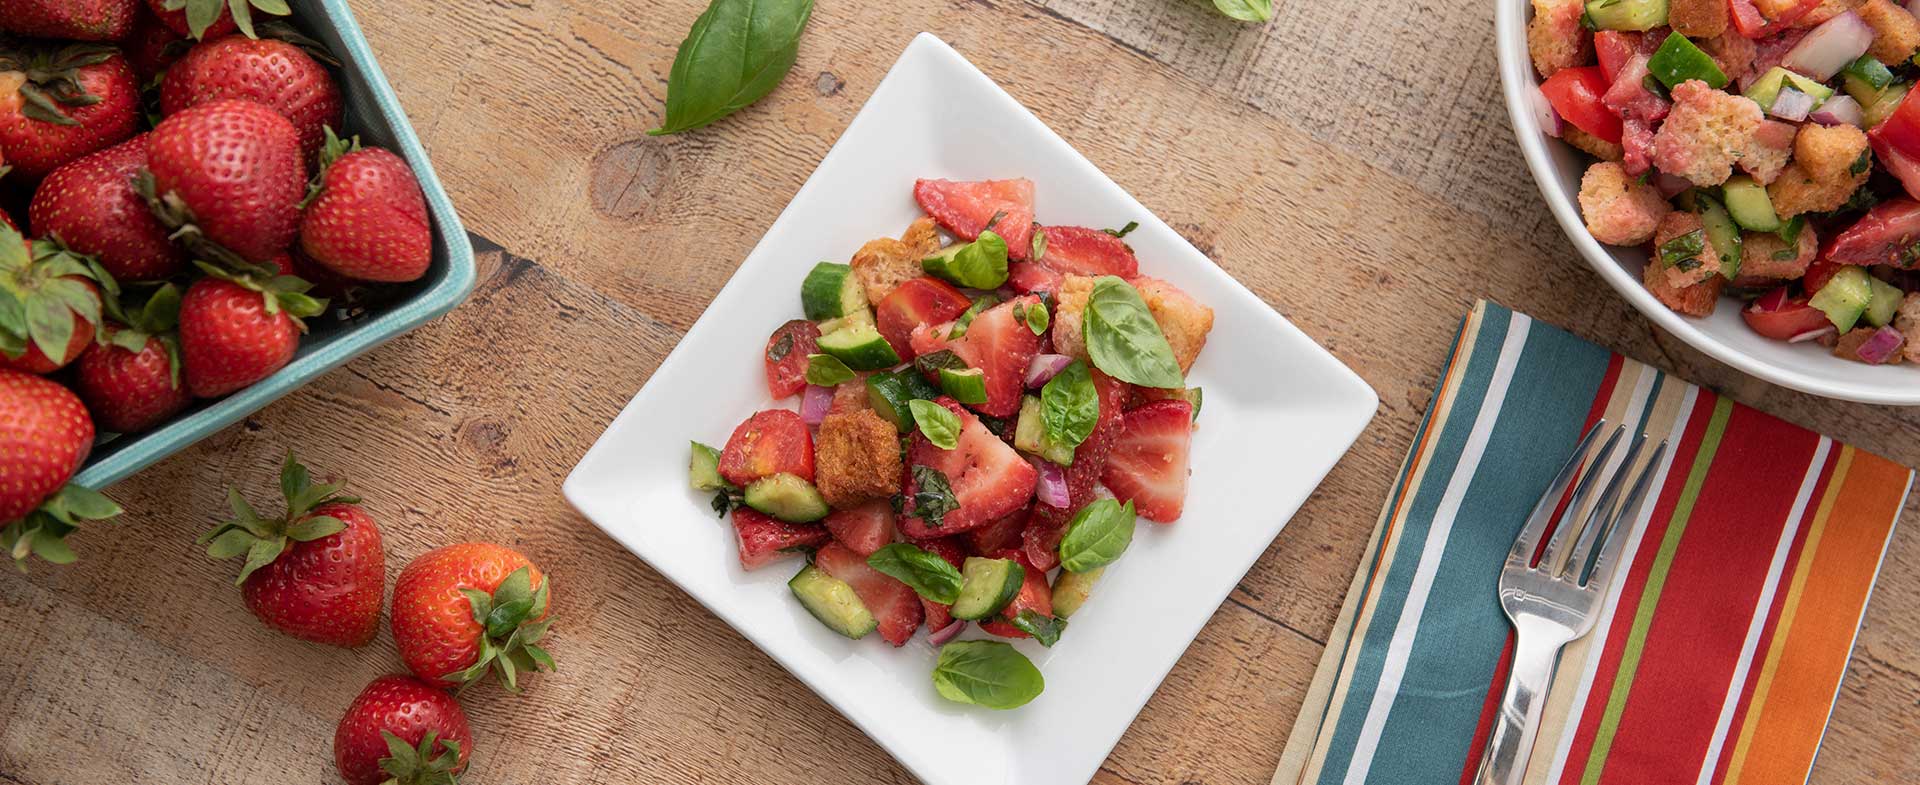 Strawberry Panzanella Salad Recipe Video